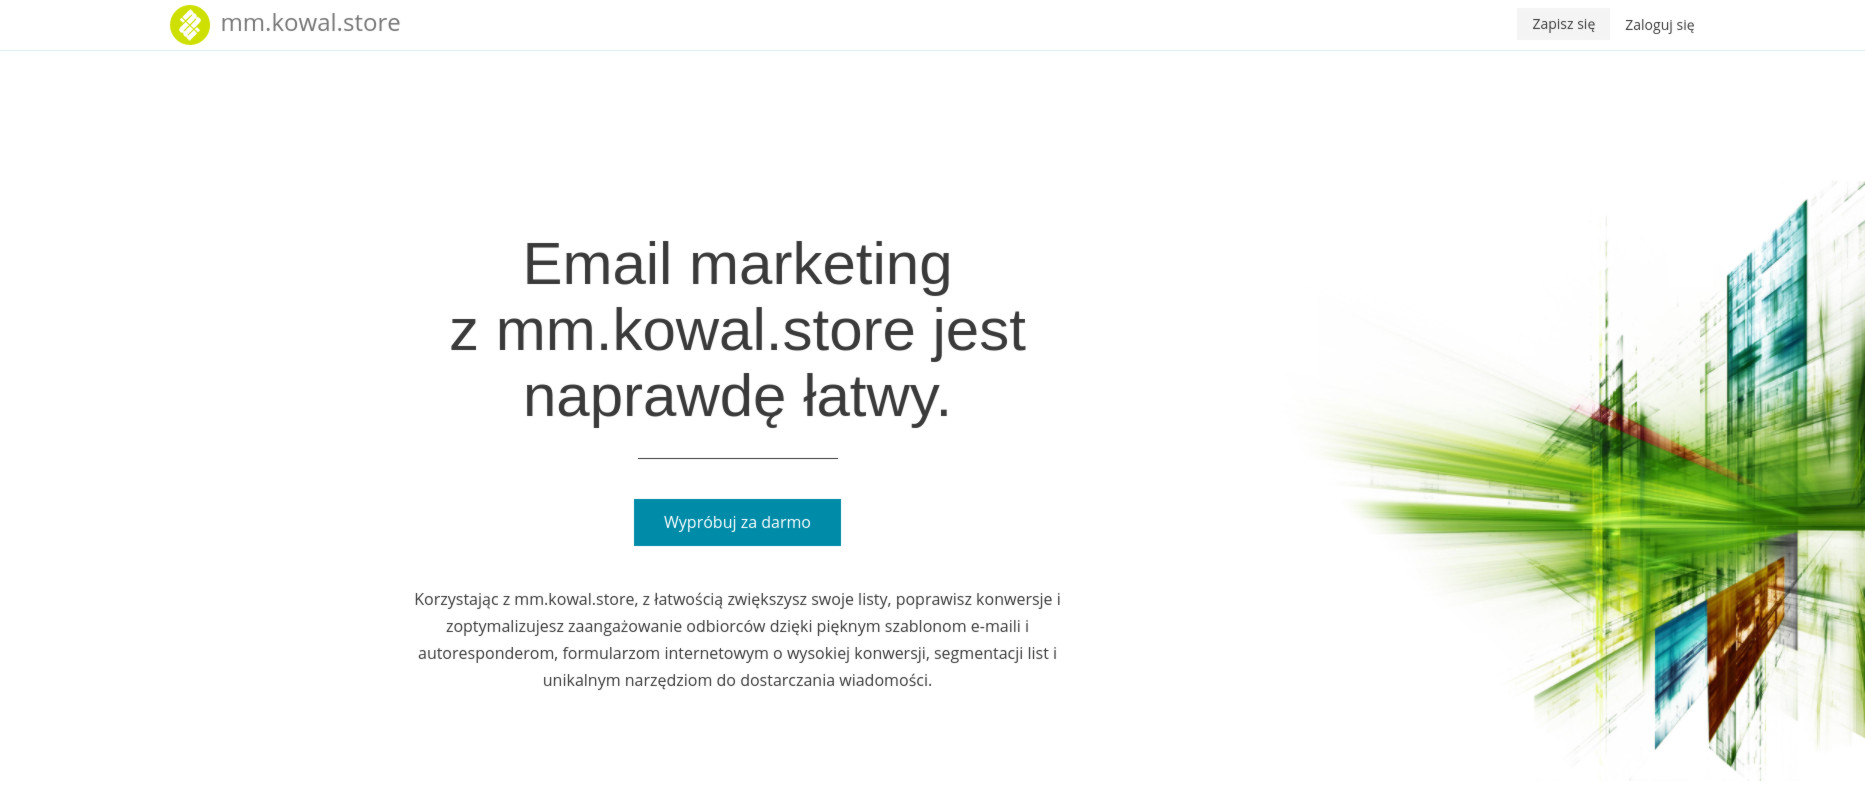 Email marketing z mm.kowal.store jest naprawdę łatwy